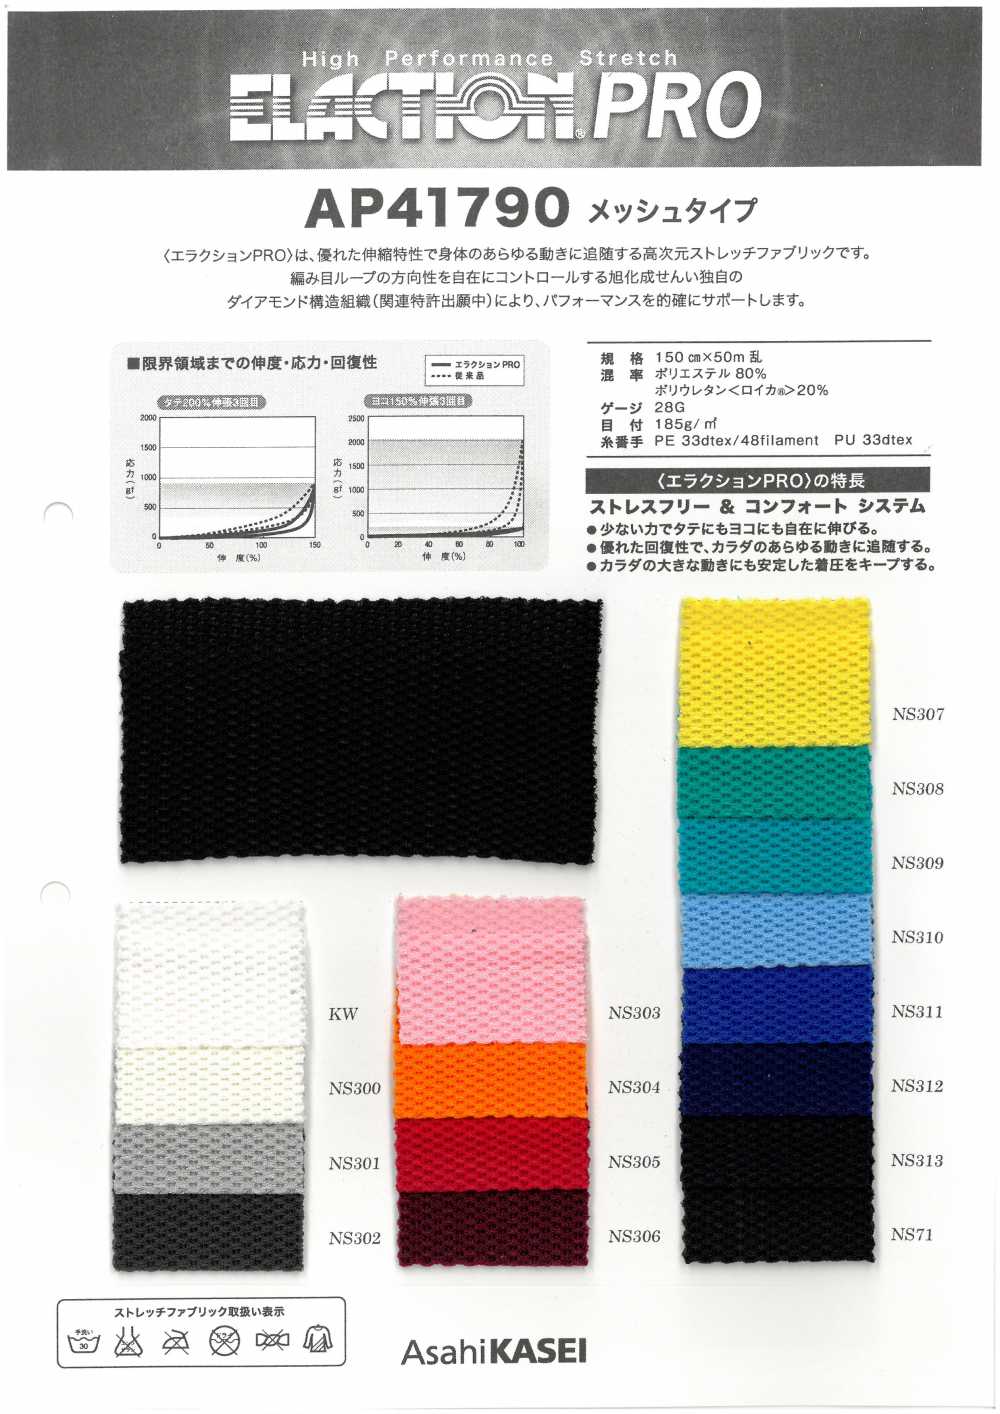 AP41790 Tipo Di Maglia In Tessuto Elasticizzato[Tessile / Tessuto] Tratto Del Giappone